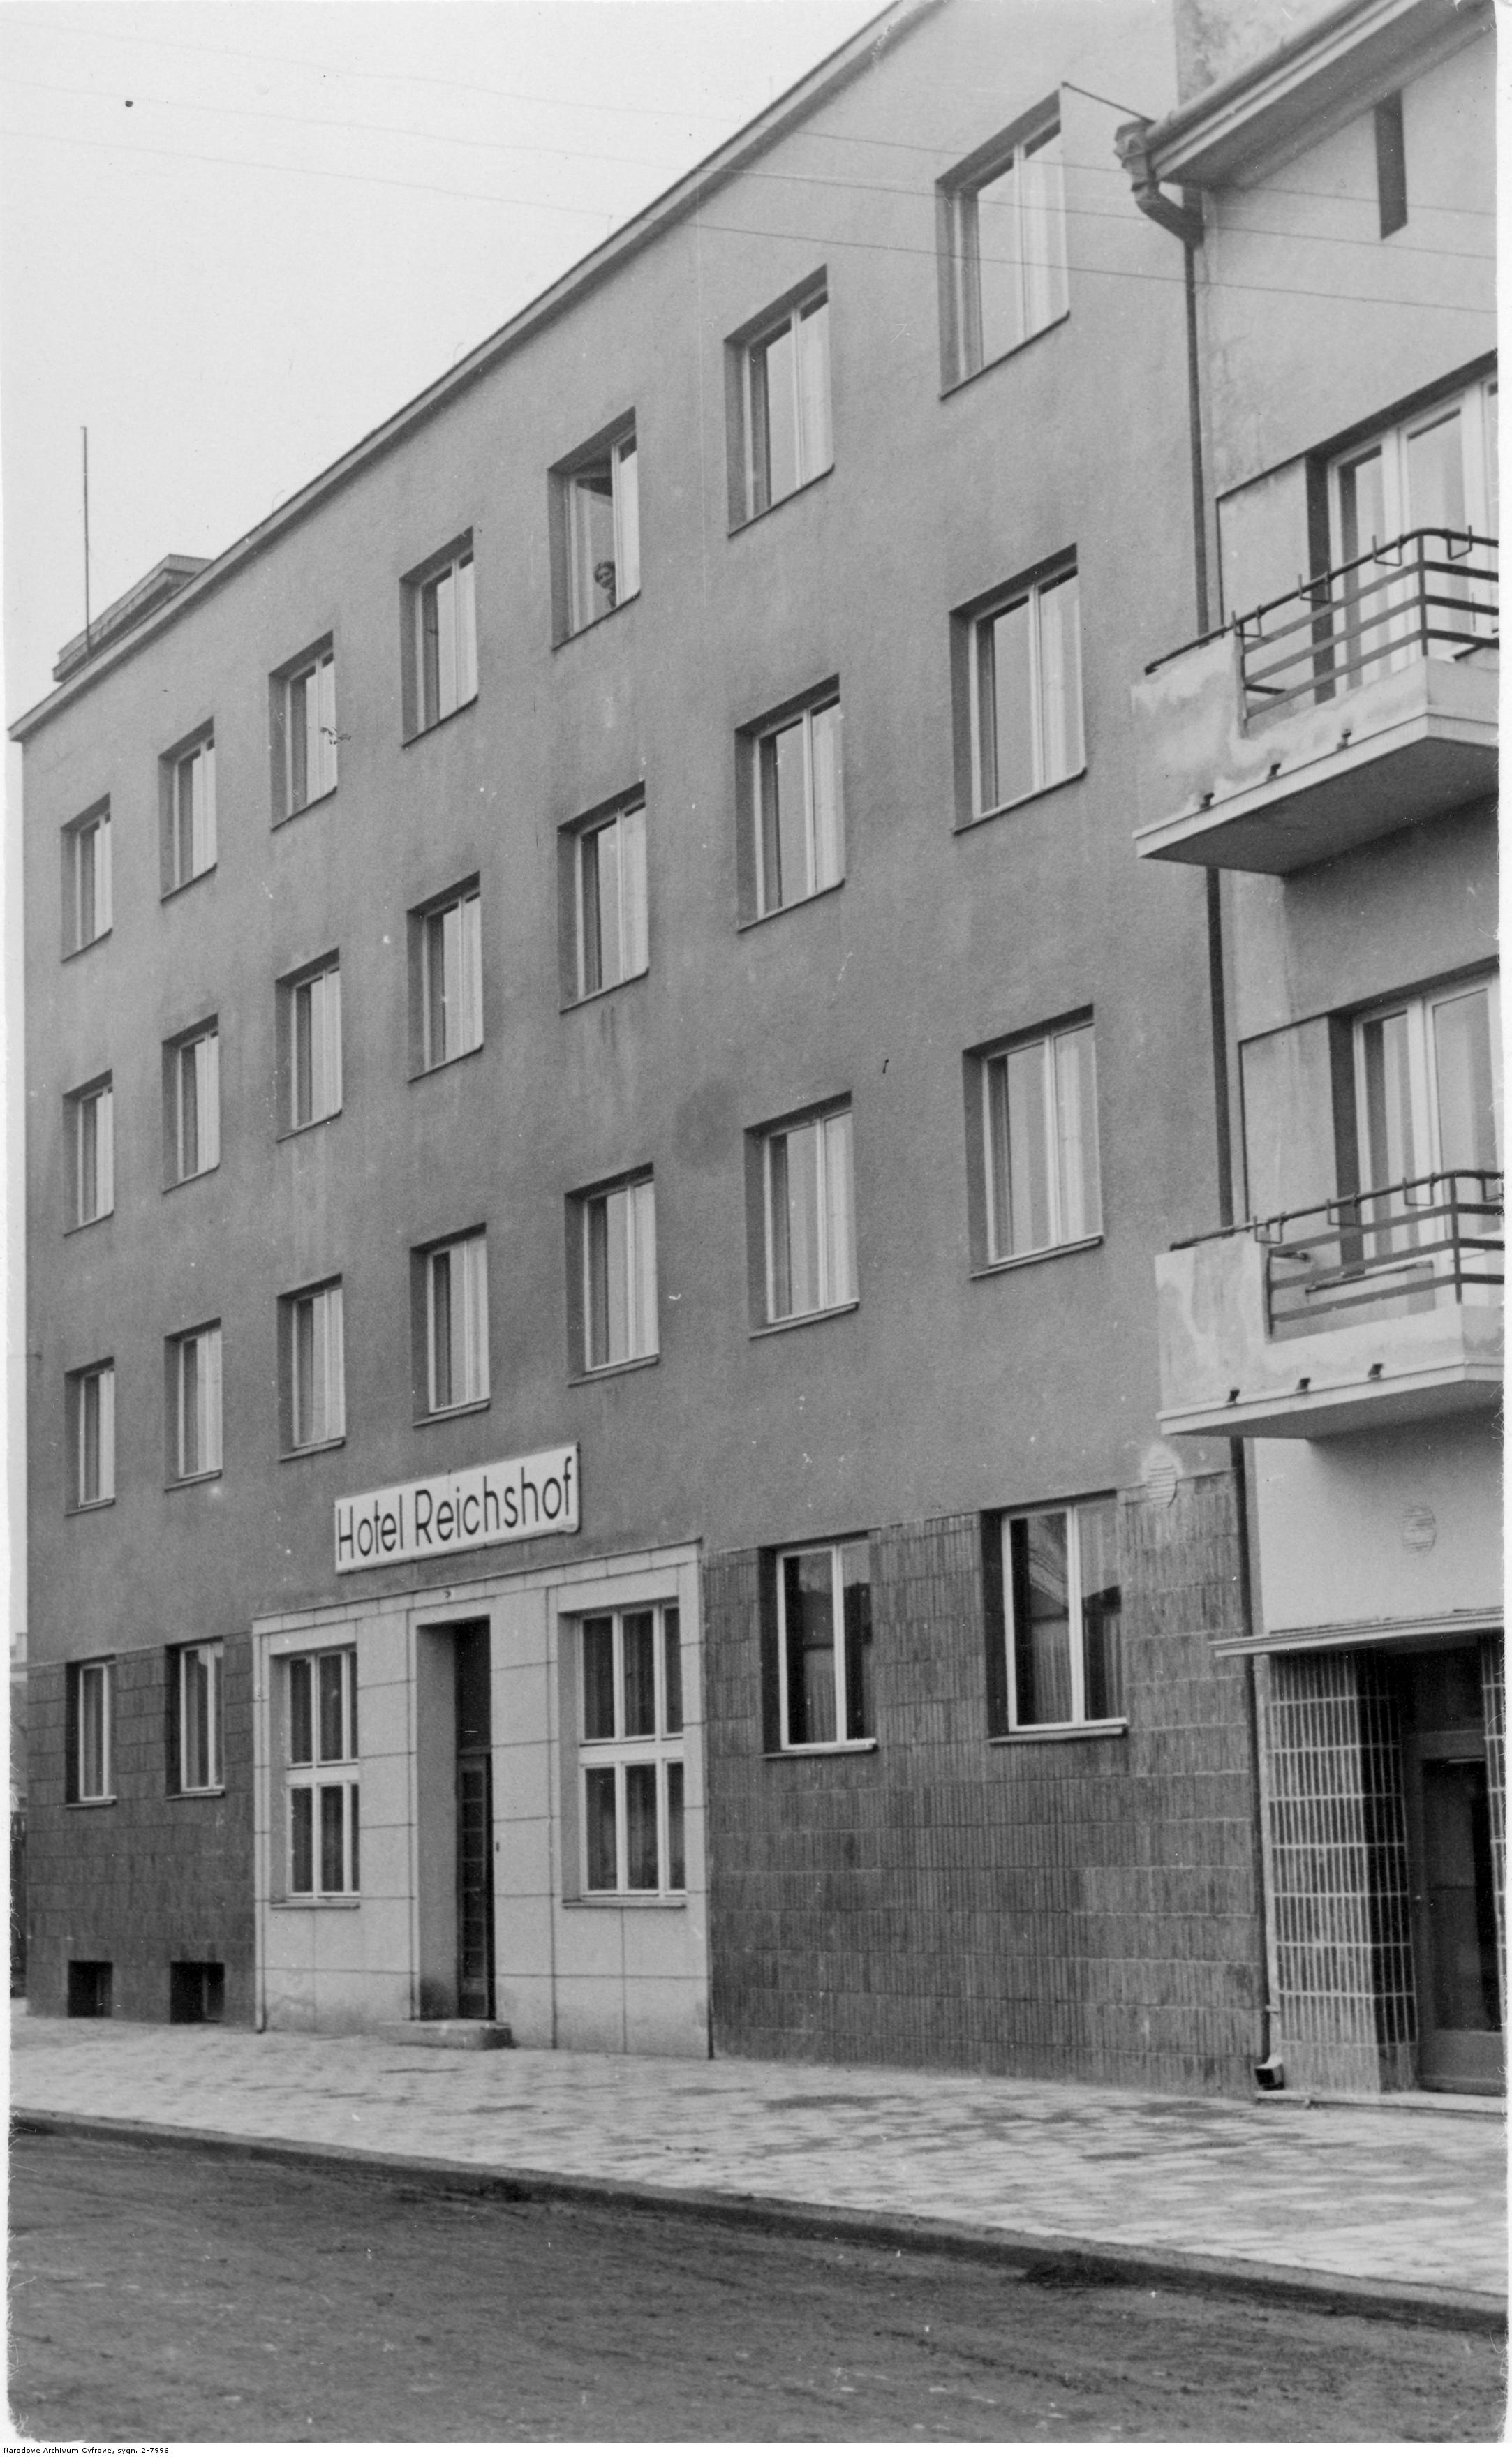 Hotel Reichshof w Rzeszowie, widok zewnetrzny, rok 1940-11